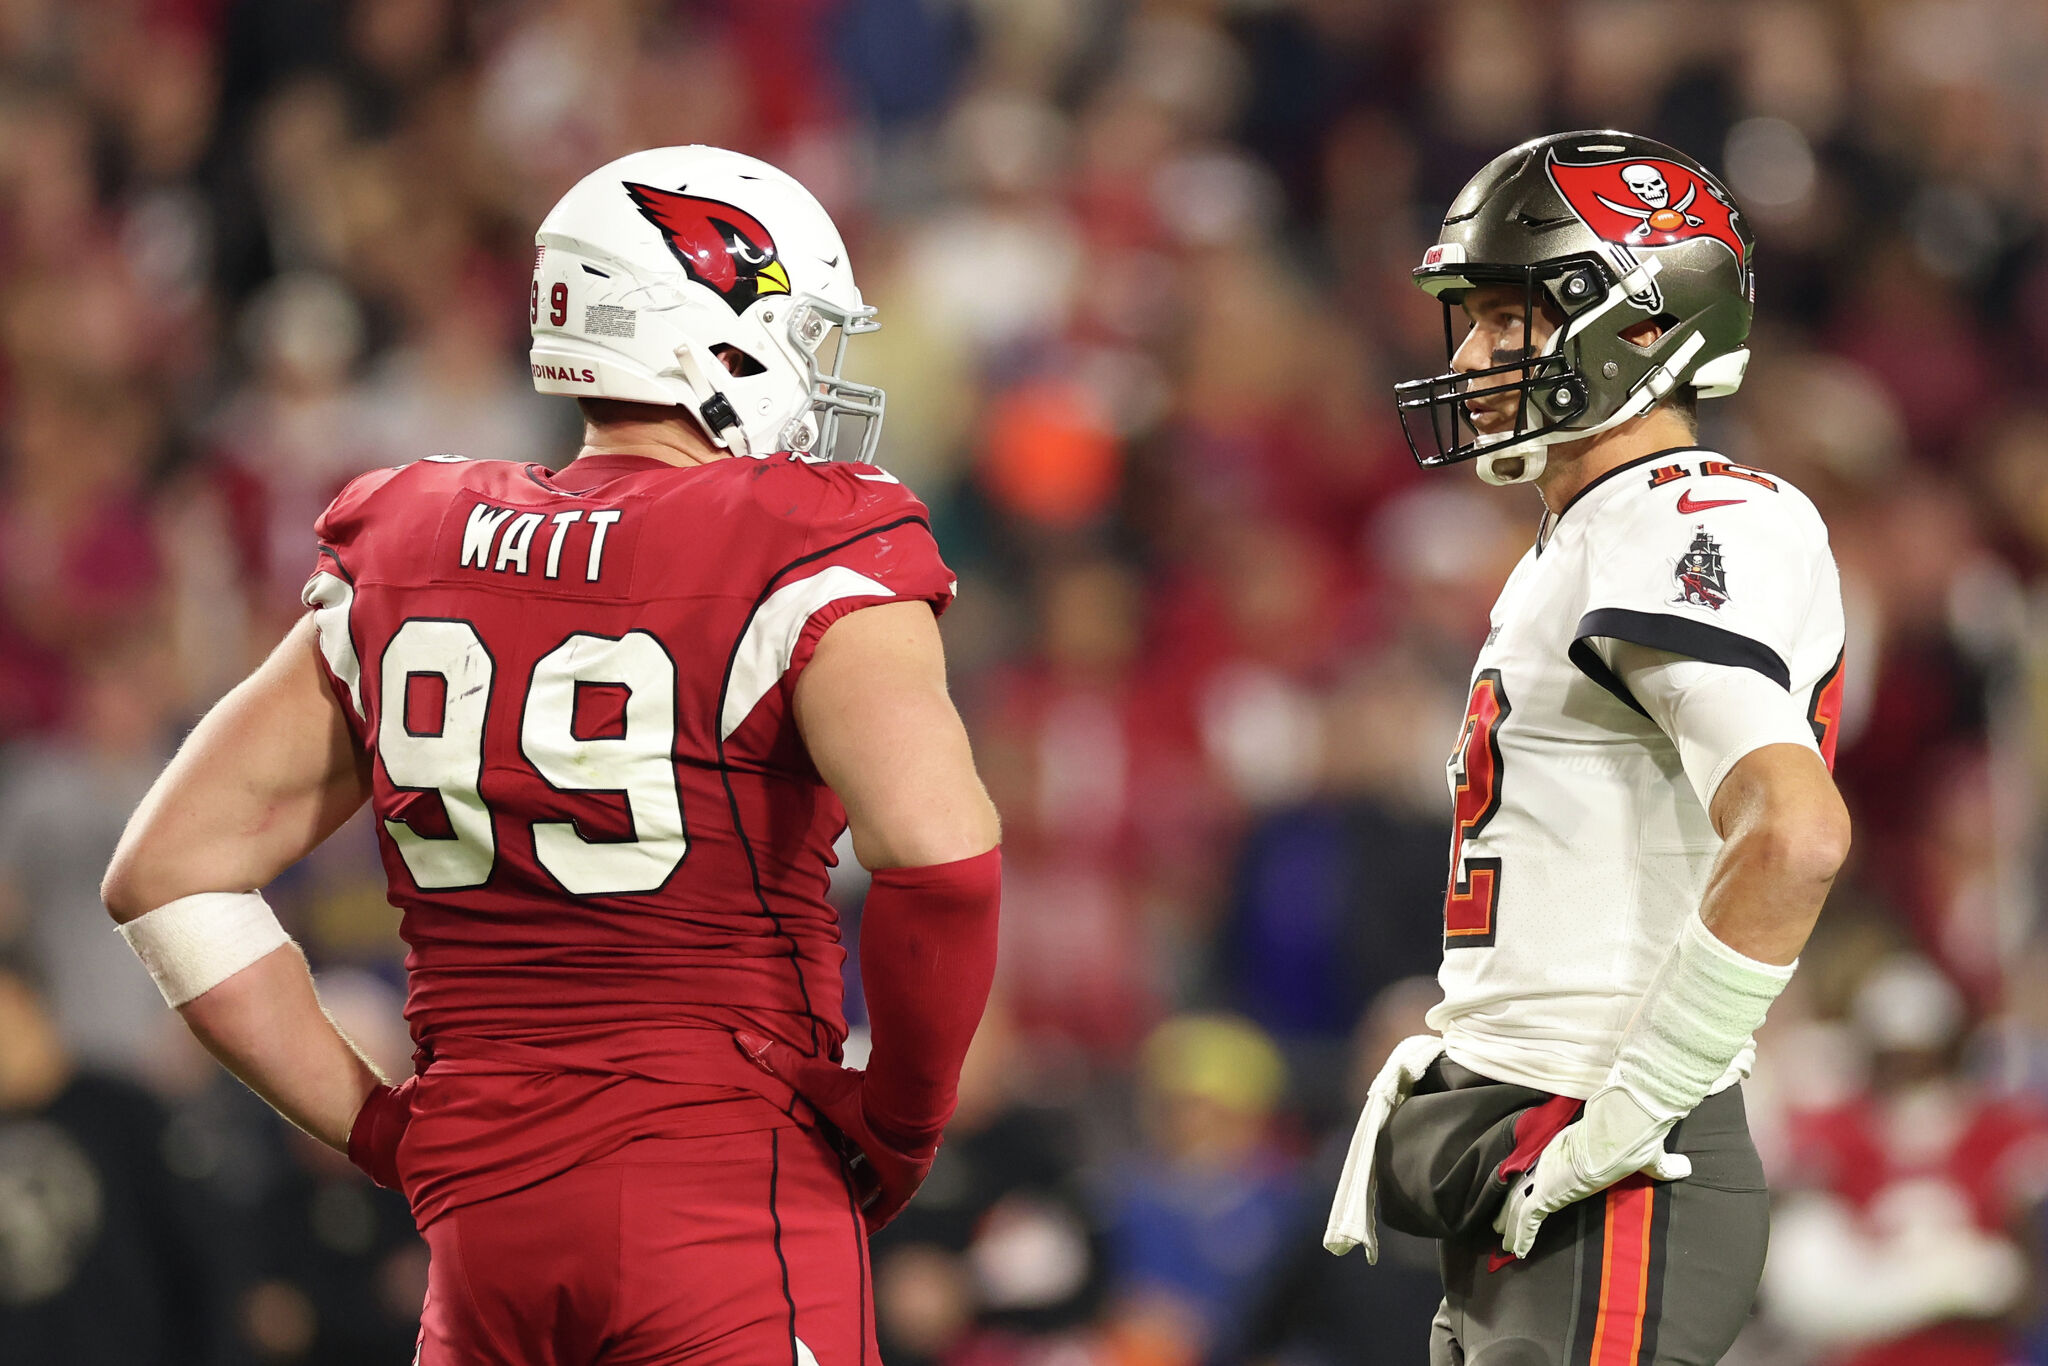 NFL star J.J. Watt announces final season after Bucs, Cardinals game